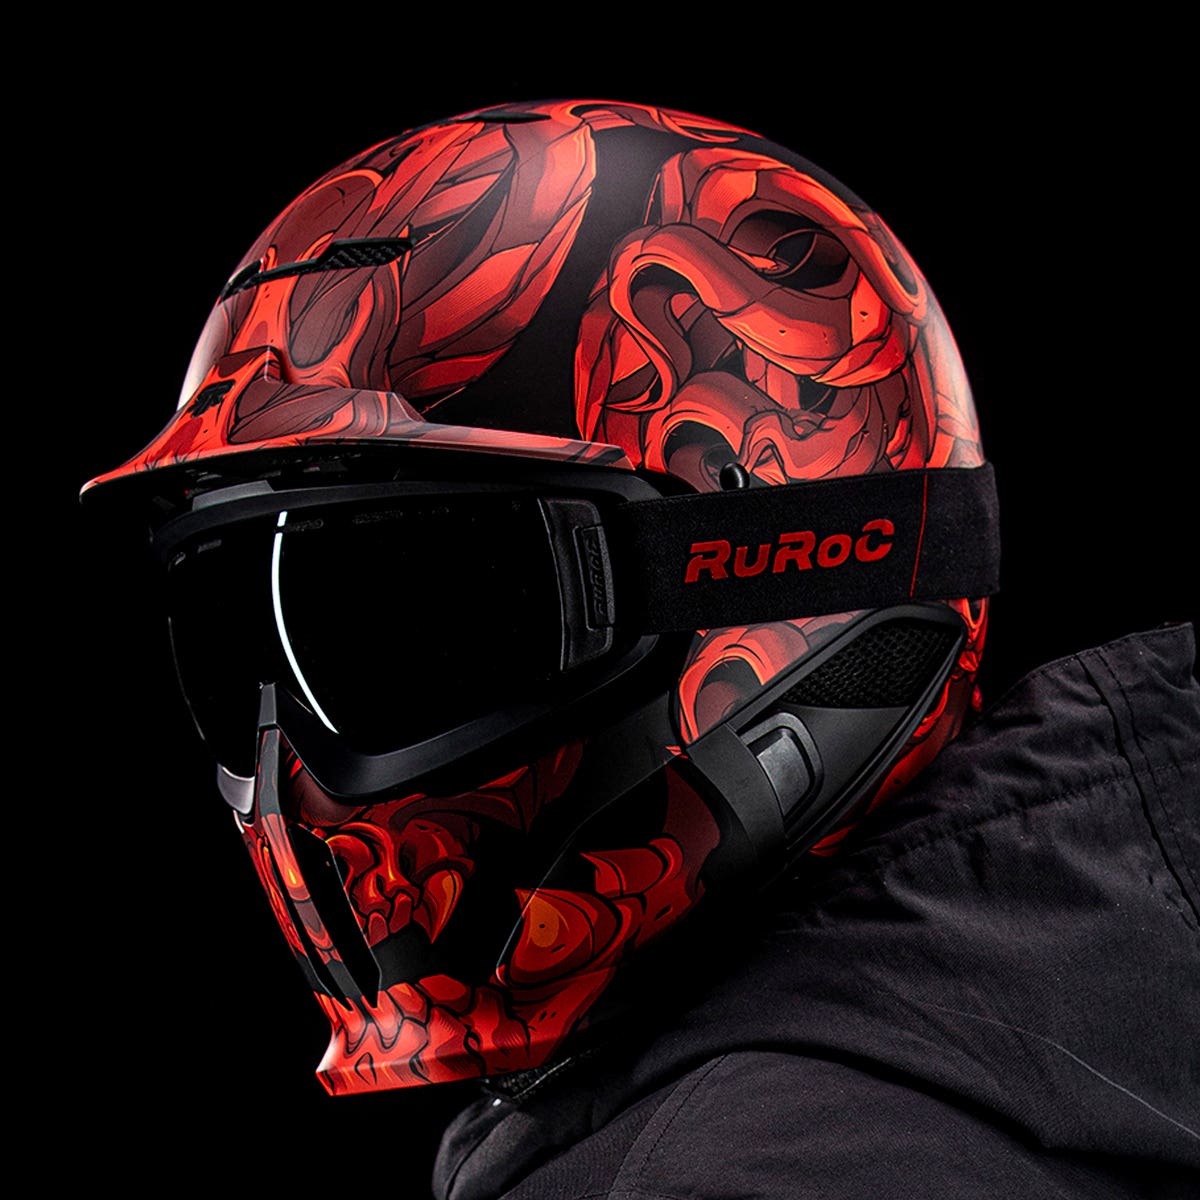 RG1-DX Snow-Sports Helmet - El Diablo (2020)